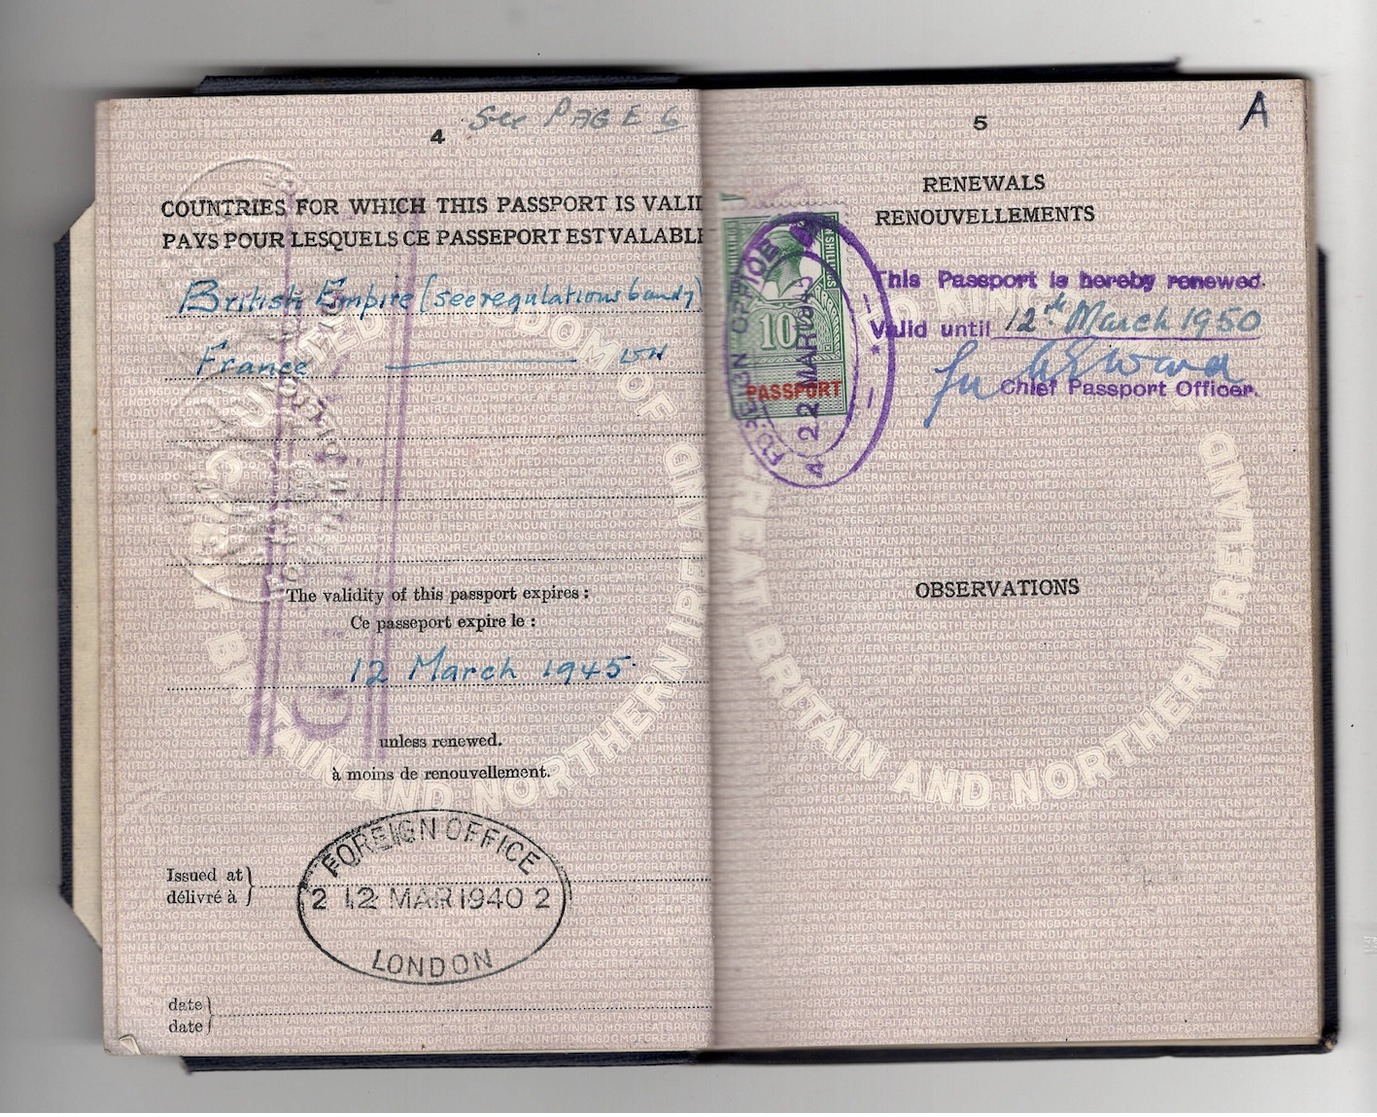 WW2 Passeport United Kingdom 1940/1945. Fiscaux France Et étranger, "affaires étrangères GRATIS", Nbx Cachets Consulats. - Historical Documents